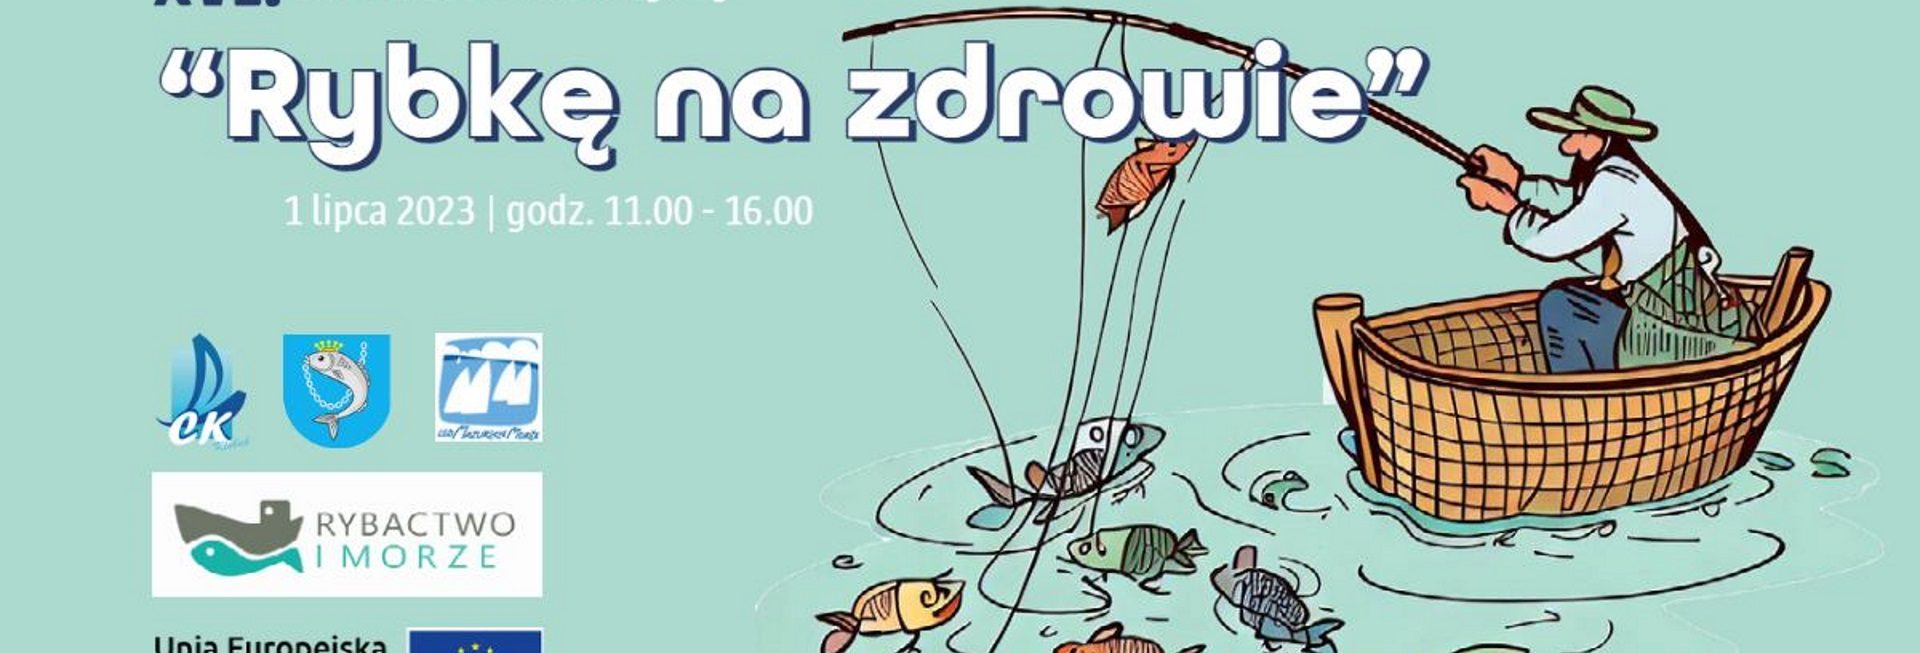 Plakat zapraszający w sobotę 1 lipca 2023 r. na Mazurski Festiwal Rybny "Rybkę na zdrowie" Mikołajki 2023.